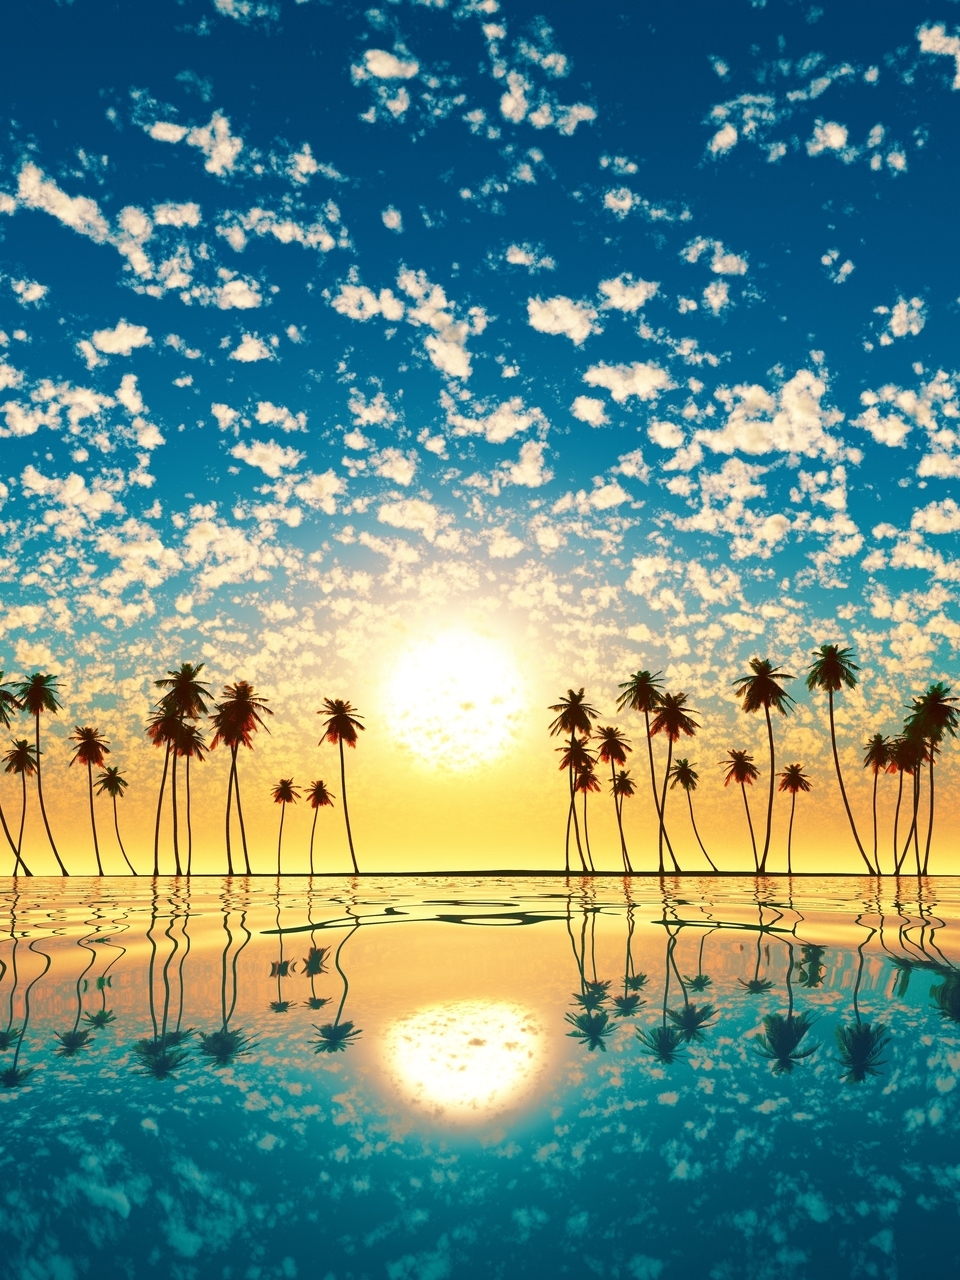 Картинка: Пейзаж, закат, солнце, небо, облака, остров, океан, пальмы, вода, отражение, горизонт